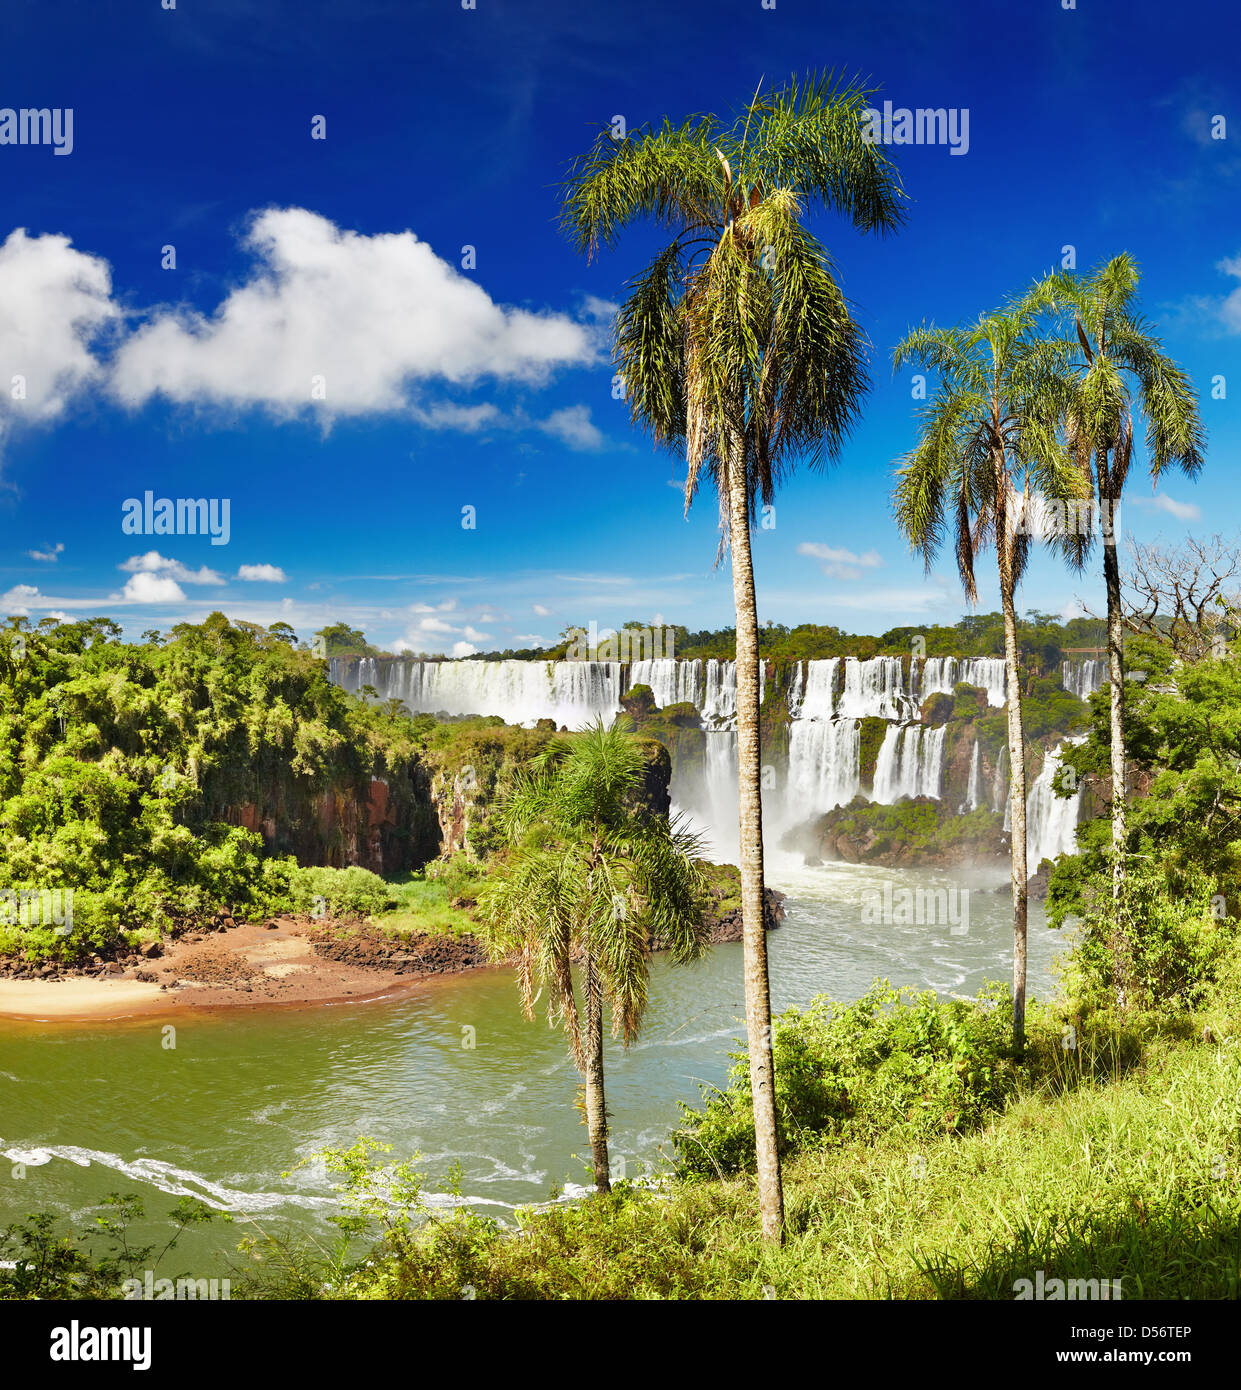 Iguaçu-Wasserfälle, die größten Serie von Wasserfällen der Welt, befindet sich an der brasilianischen und argentinischen Grenze Stockfoto